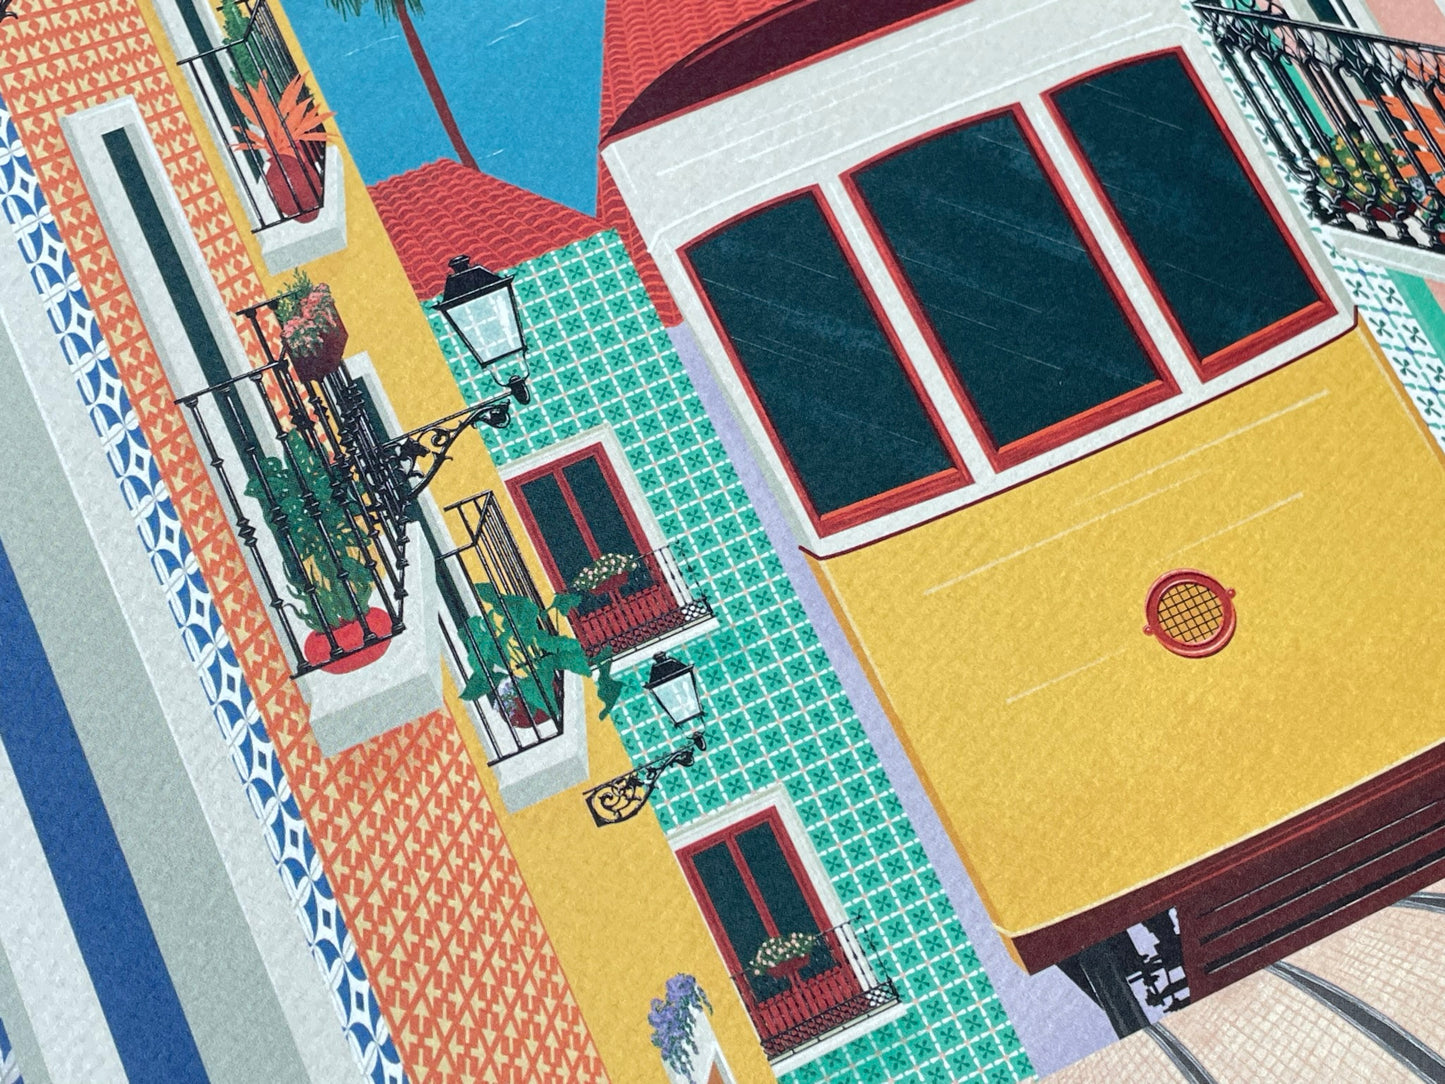 Lisbon Tram Art Print